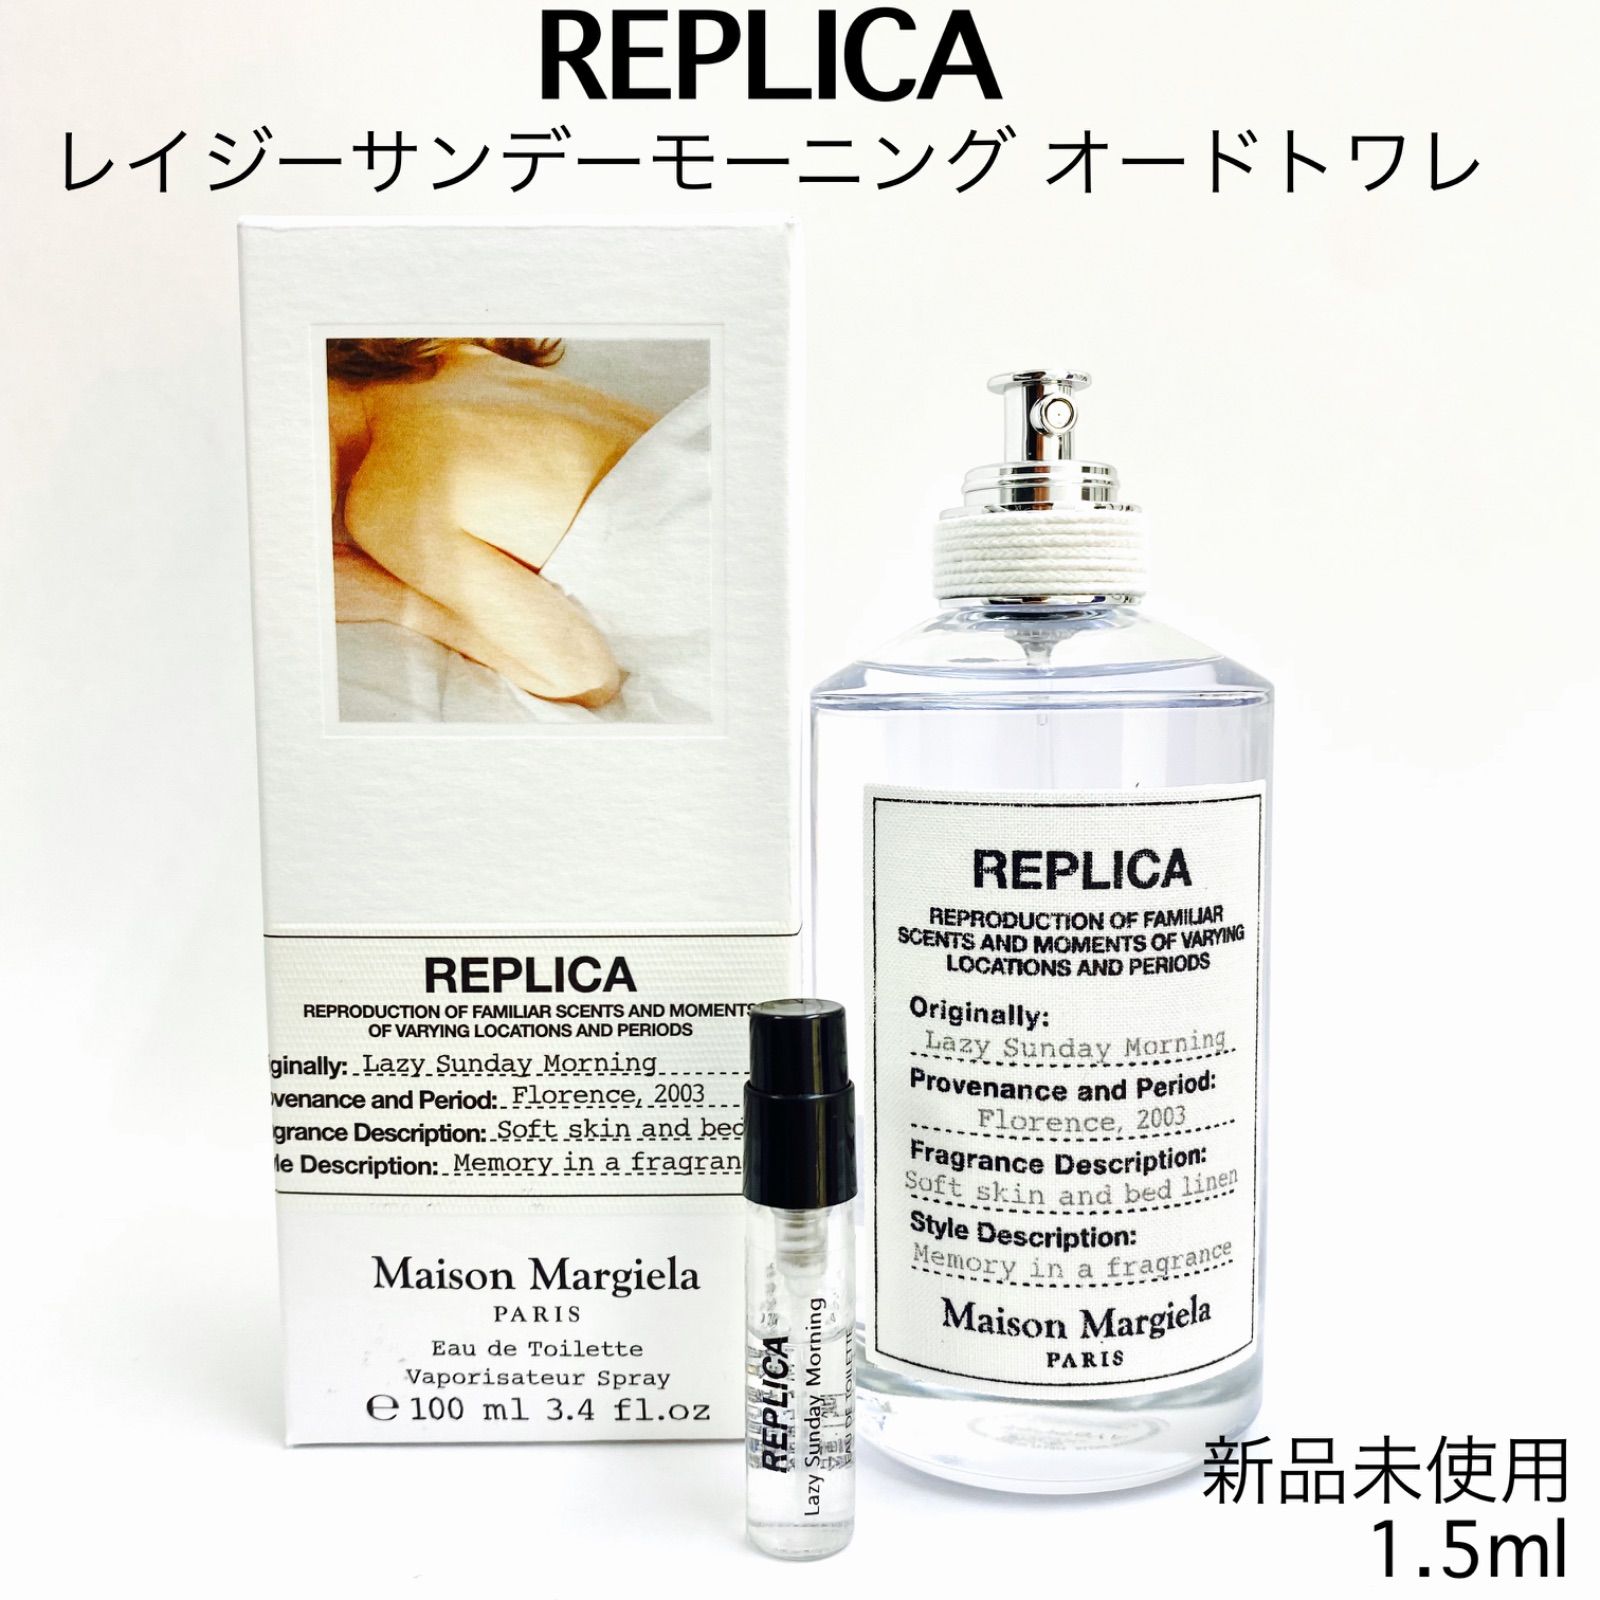 Maison Margiela レイジーサンデーモーニング 1.5ml 香水 - ユニセックス